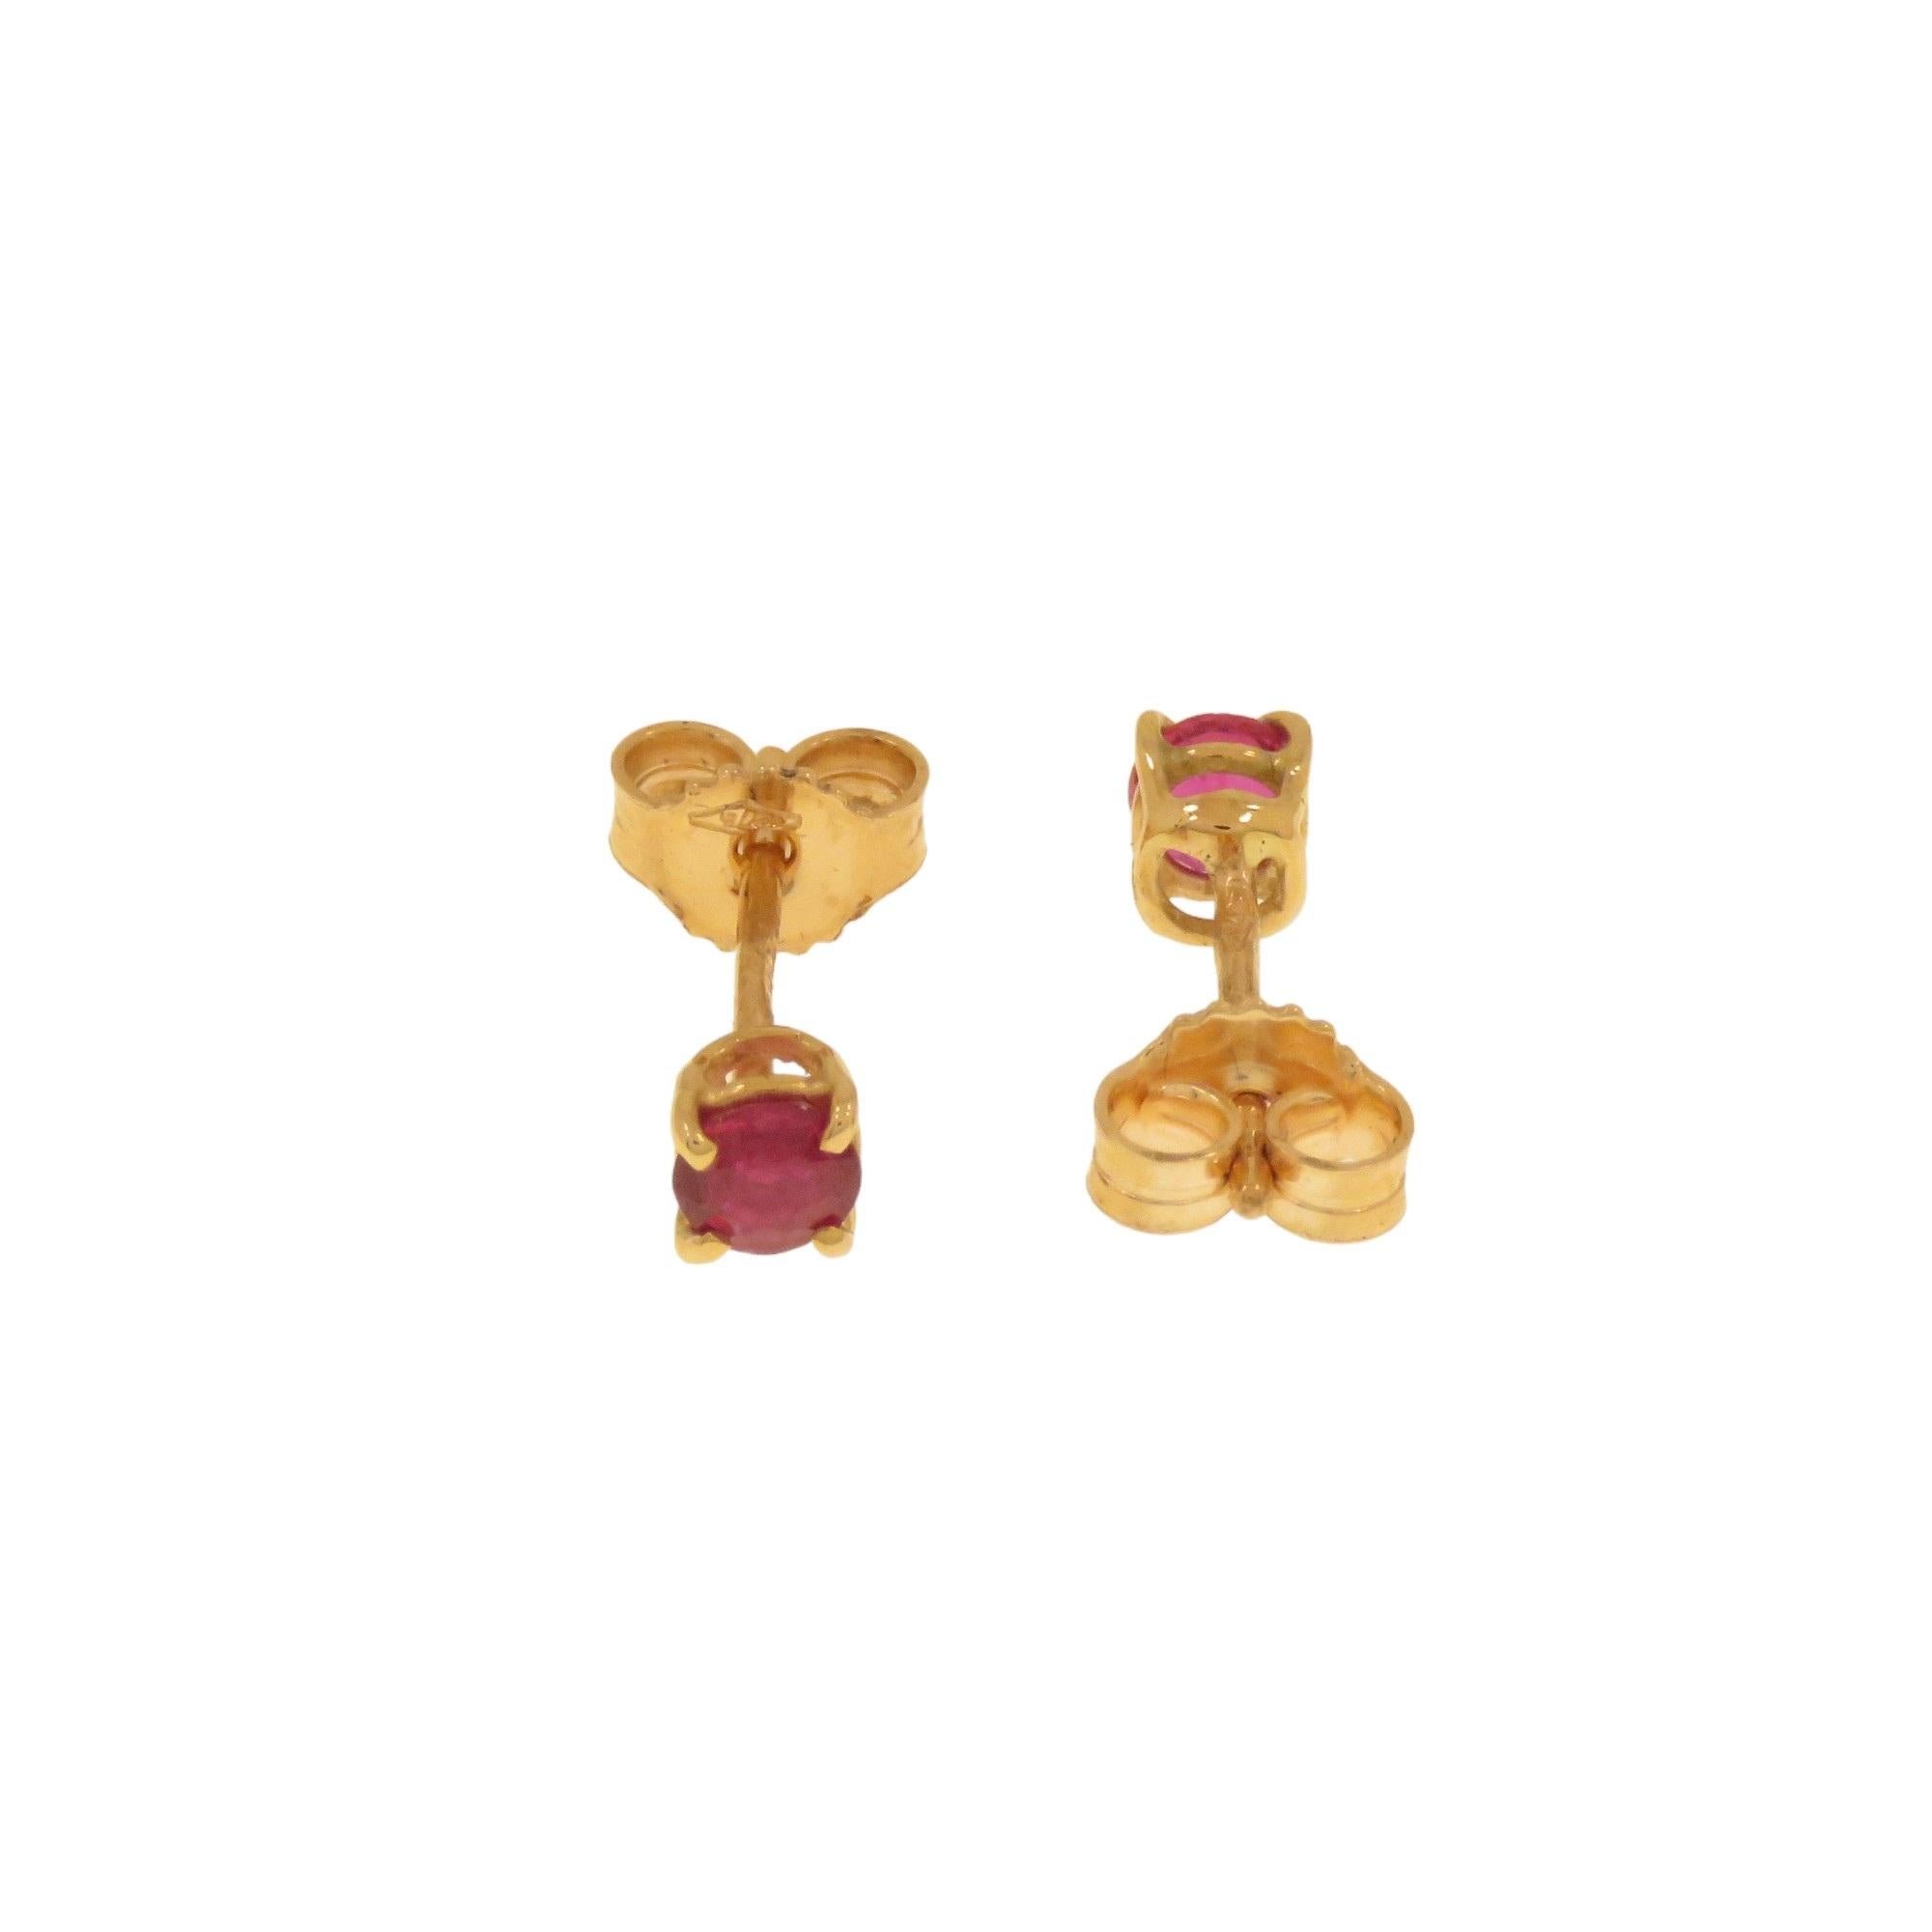 Minimalistische Ohrringe von Botta Gioielli in Mailand aus 9 Karat Roségold mit zwei Rubinen im Brillantschliff mit einem Durchmesser von 4 mm und einem Gesamtgewicht von 0,40 ct. Die Steine sind in einer Backenfassung mit einer Galerie gefasst. Die